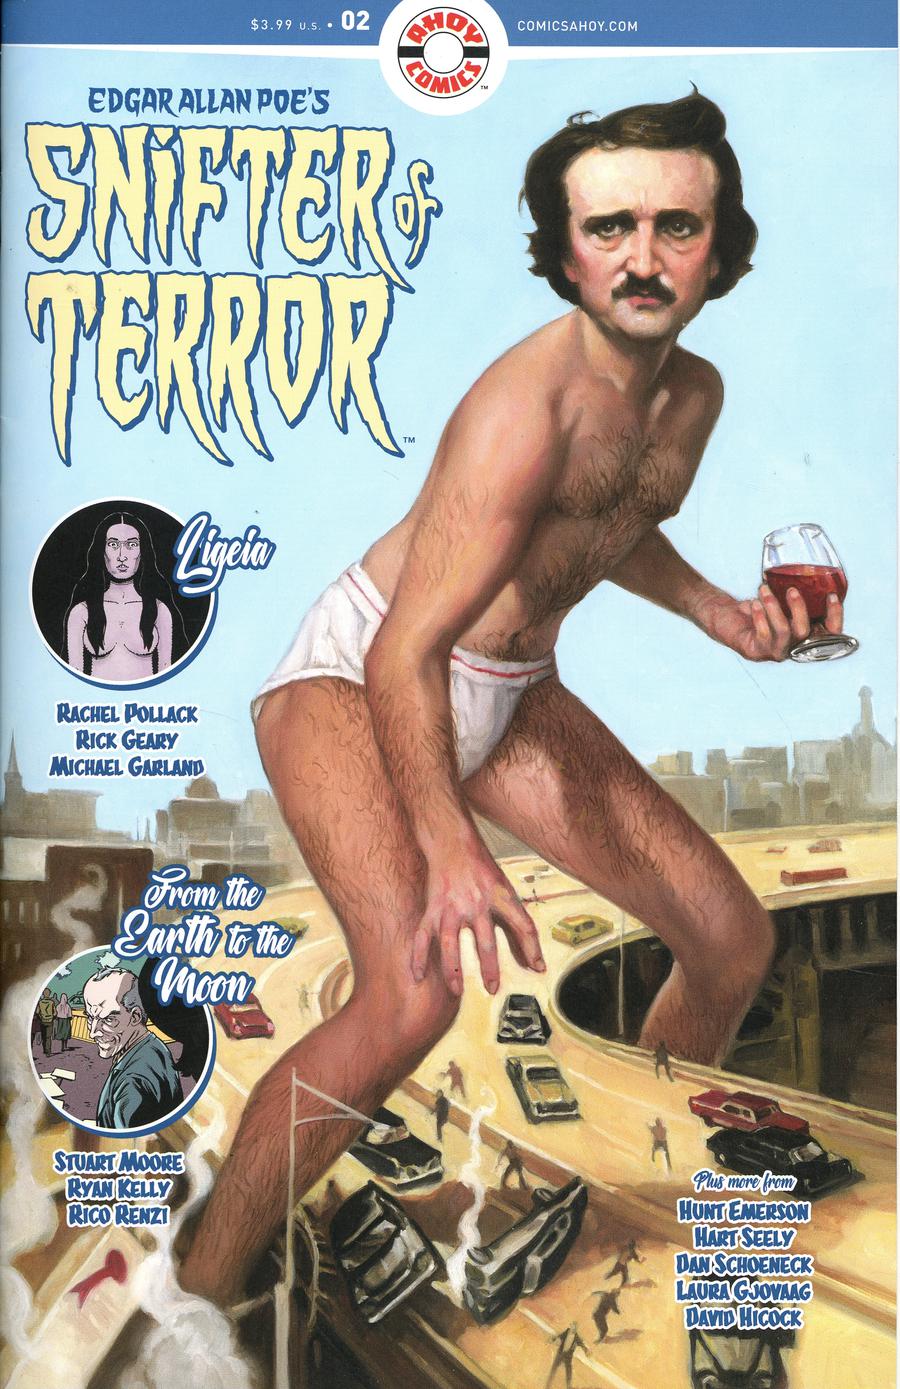 Edgar Allan Poe Snifter of Terror no. 2 (2018) (MR)